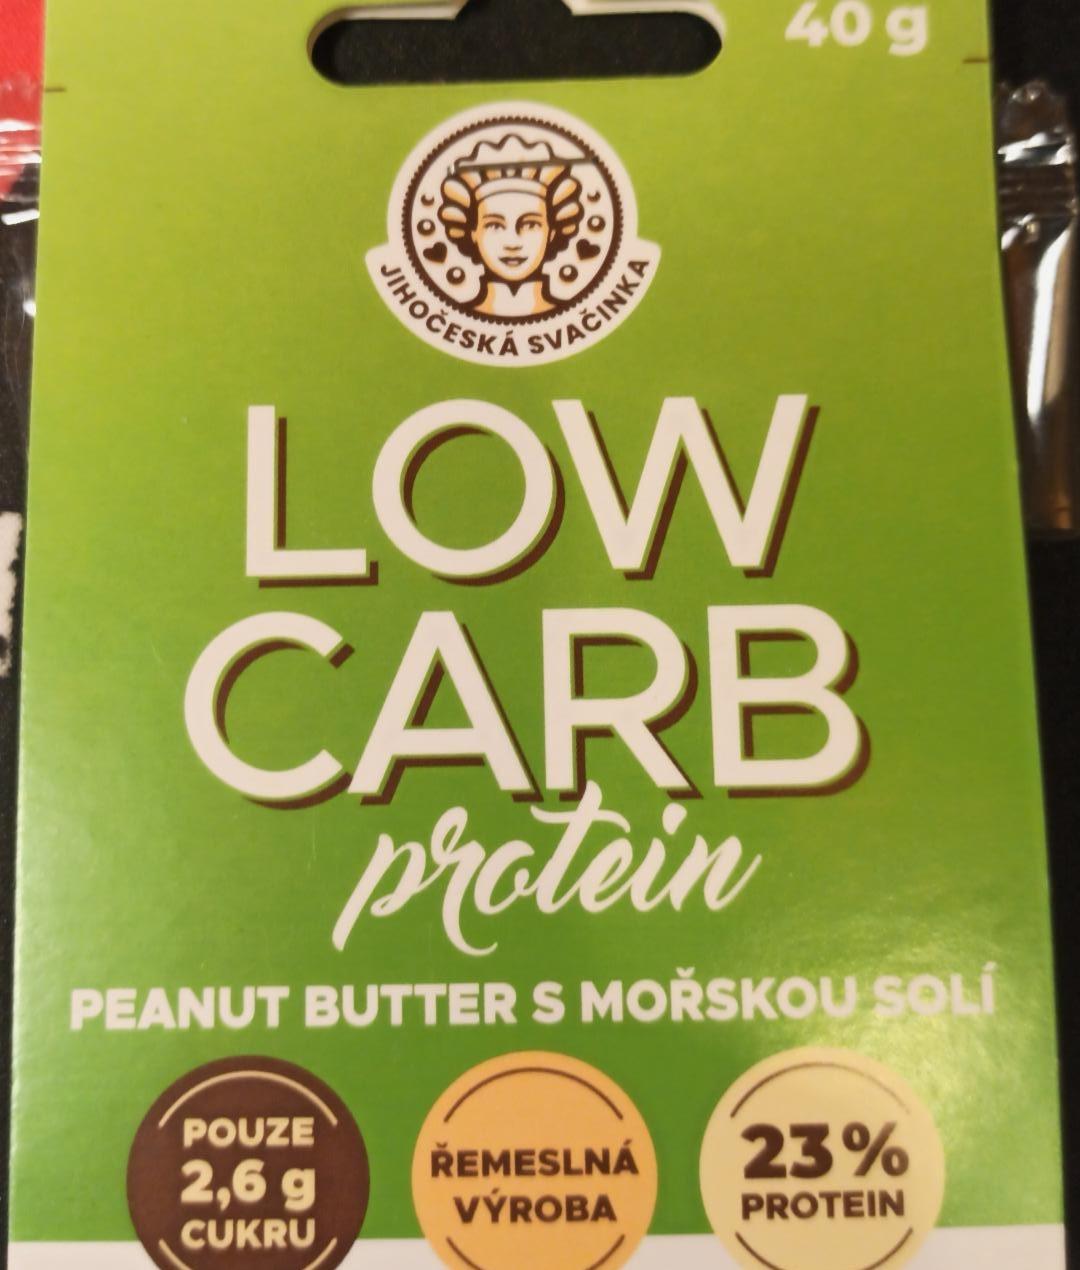 Fotografie - Low Carb protein peanut butter s mořskou solí Jihočeská svačinka